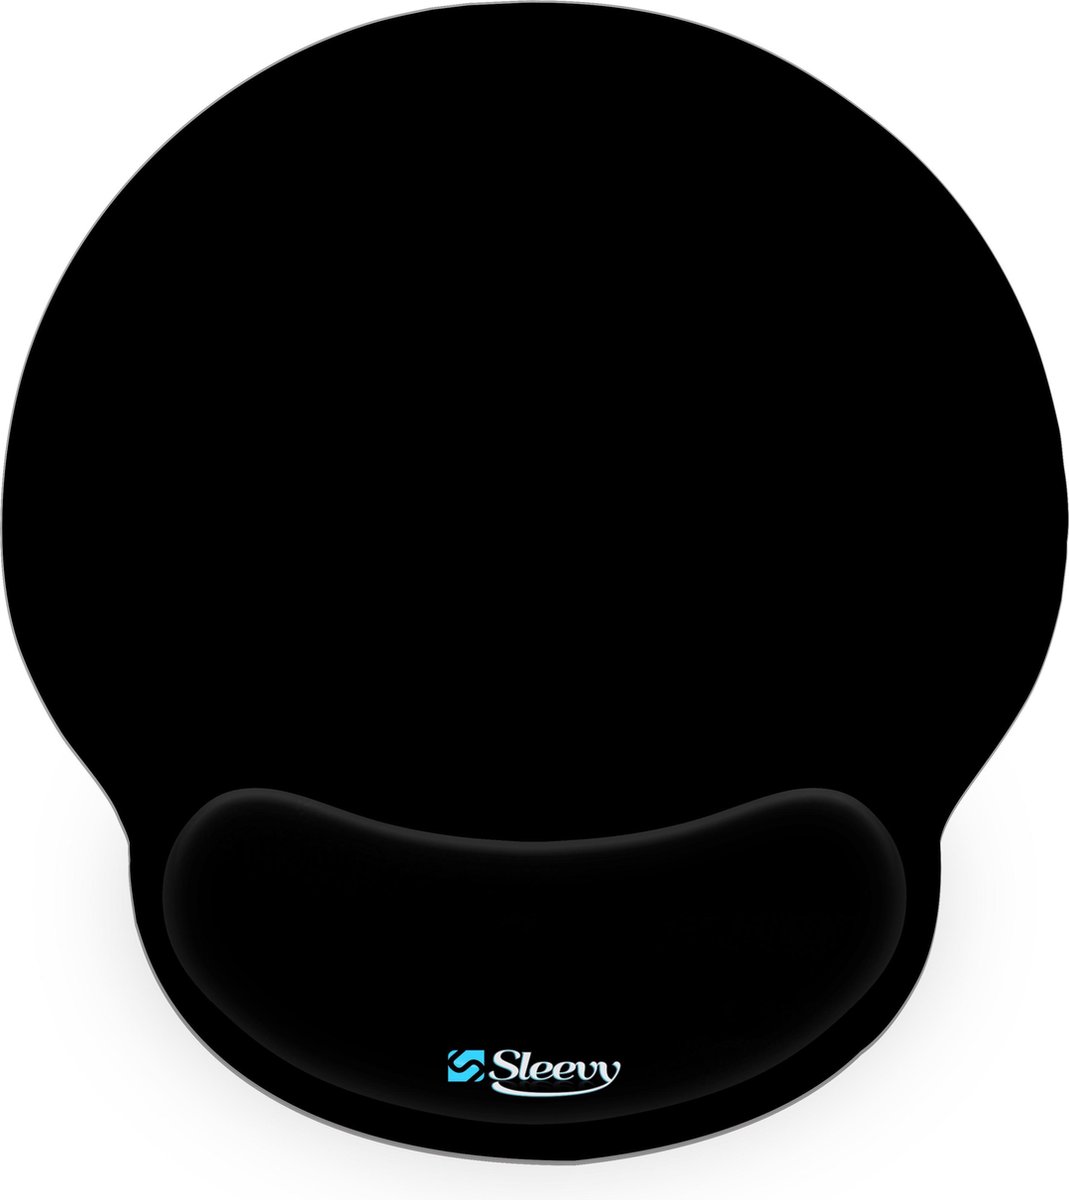 Muismat polssteun zwart - Sleevy - mousepad - Collectie 100+ designs